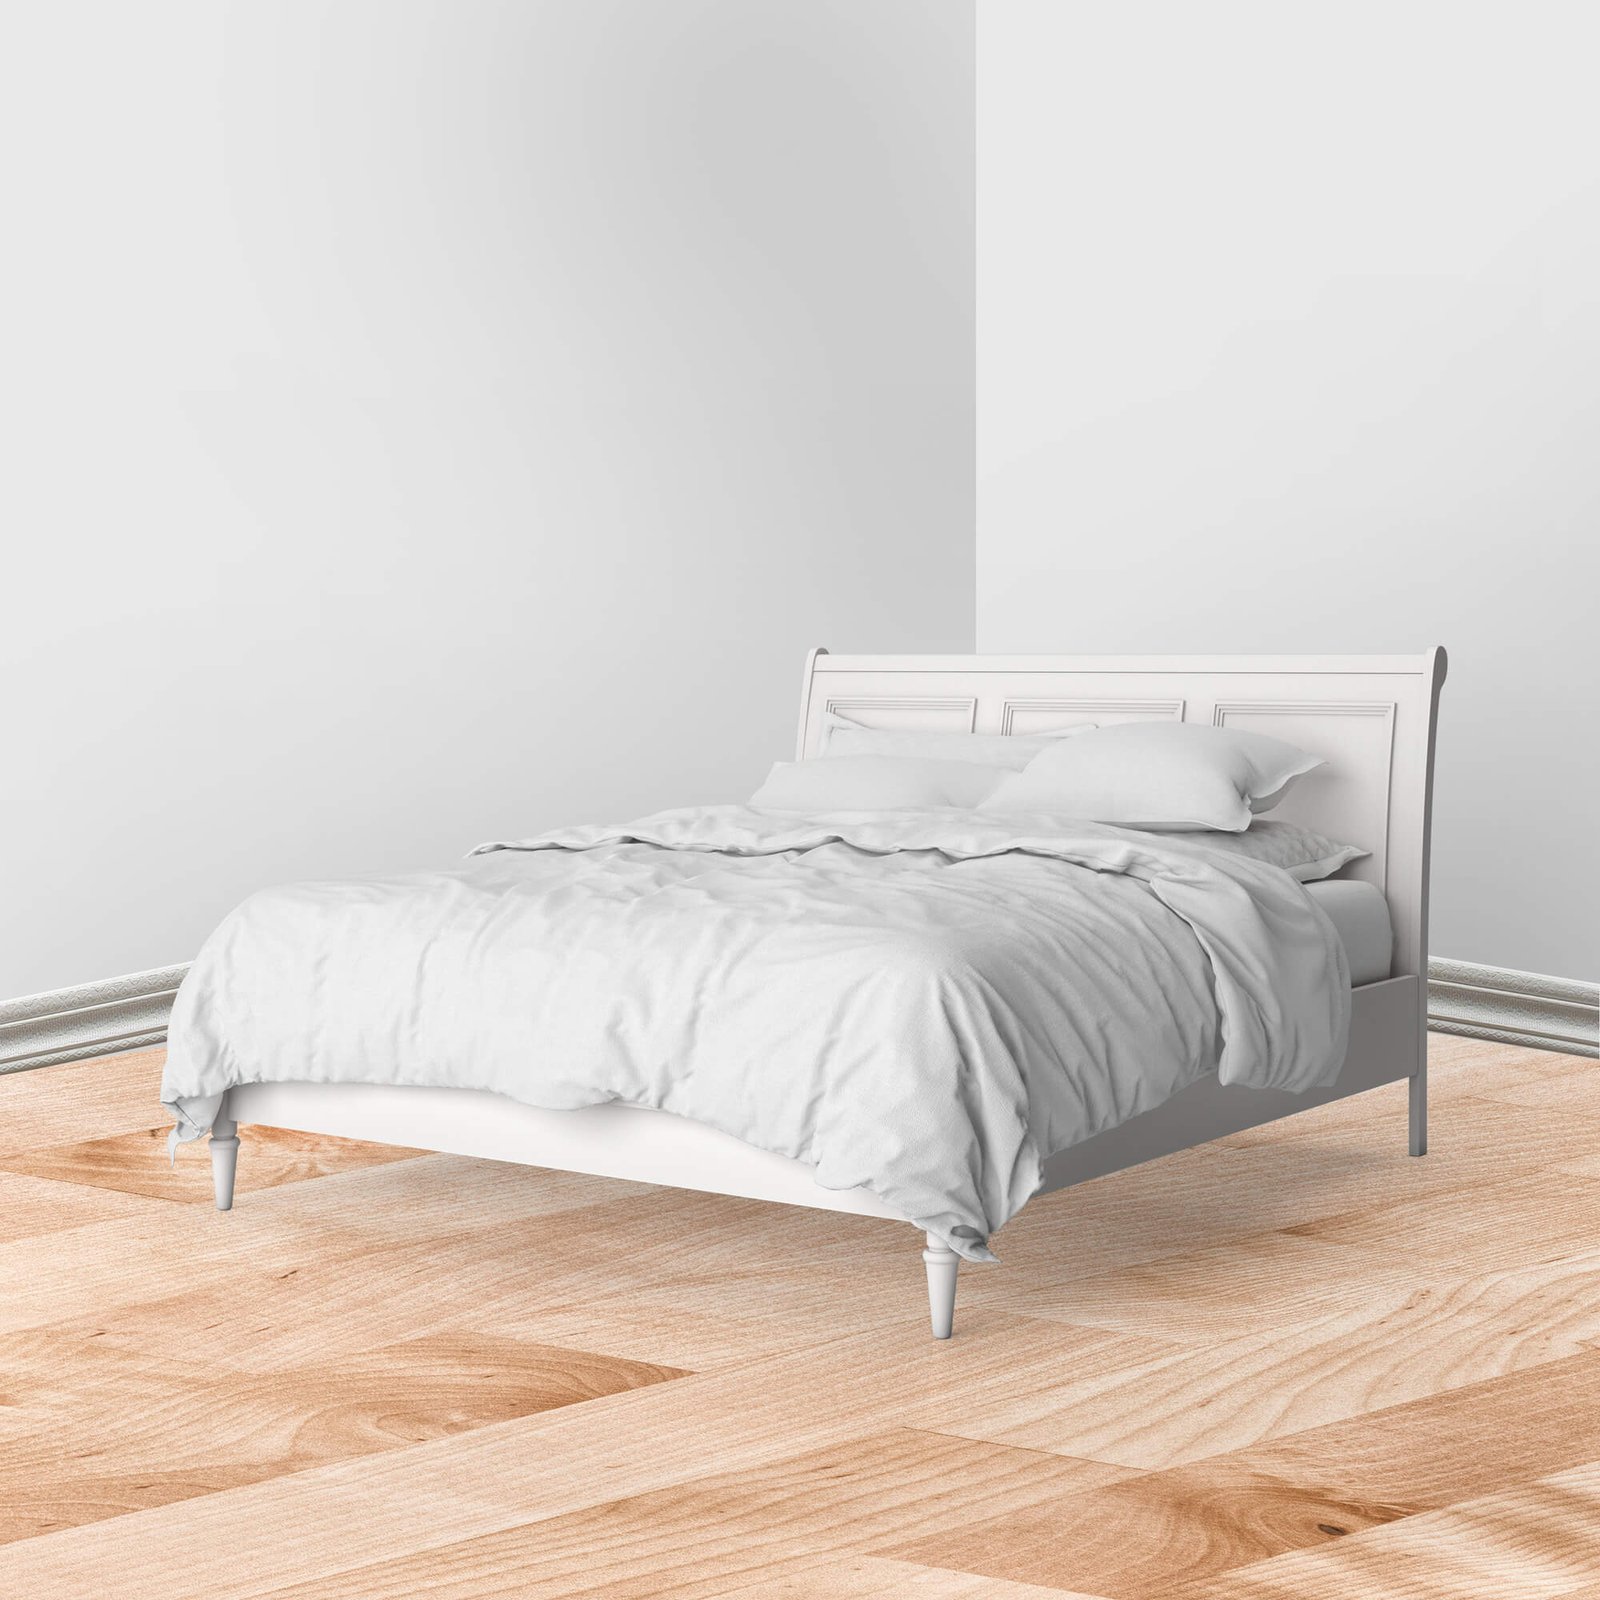 Download Free Bed Linen Mockup PSD Template - Mockup Den